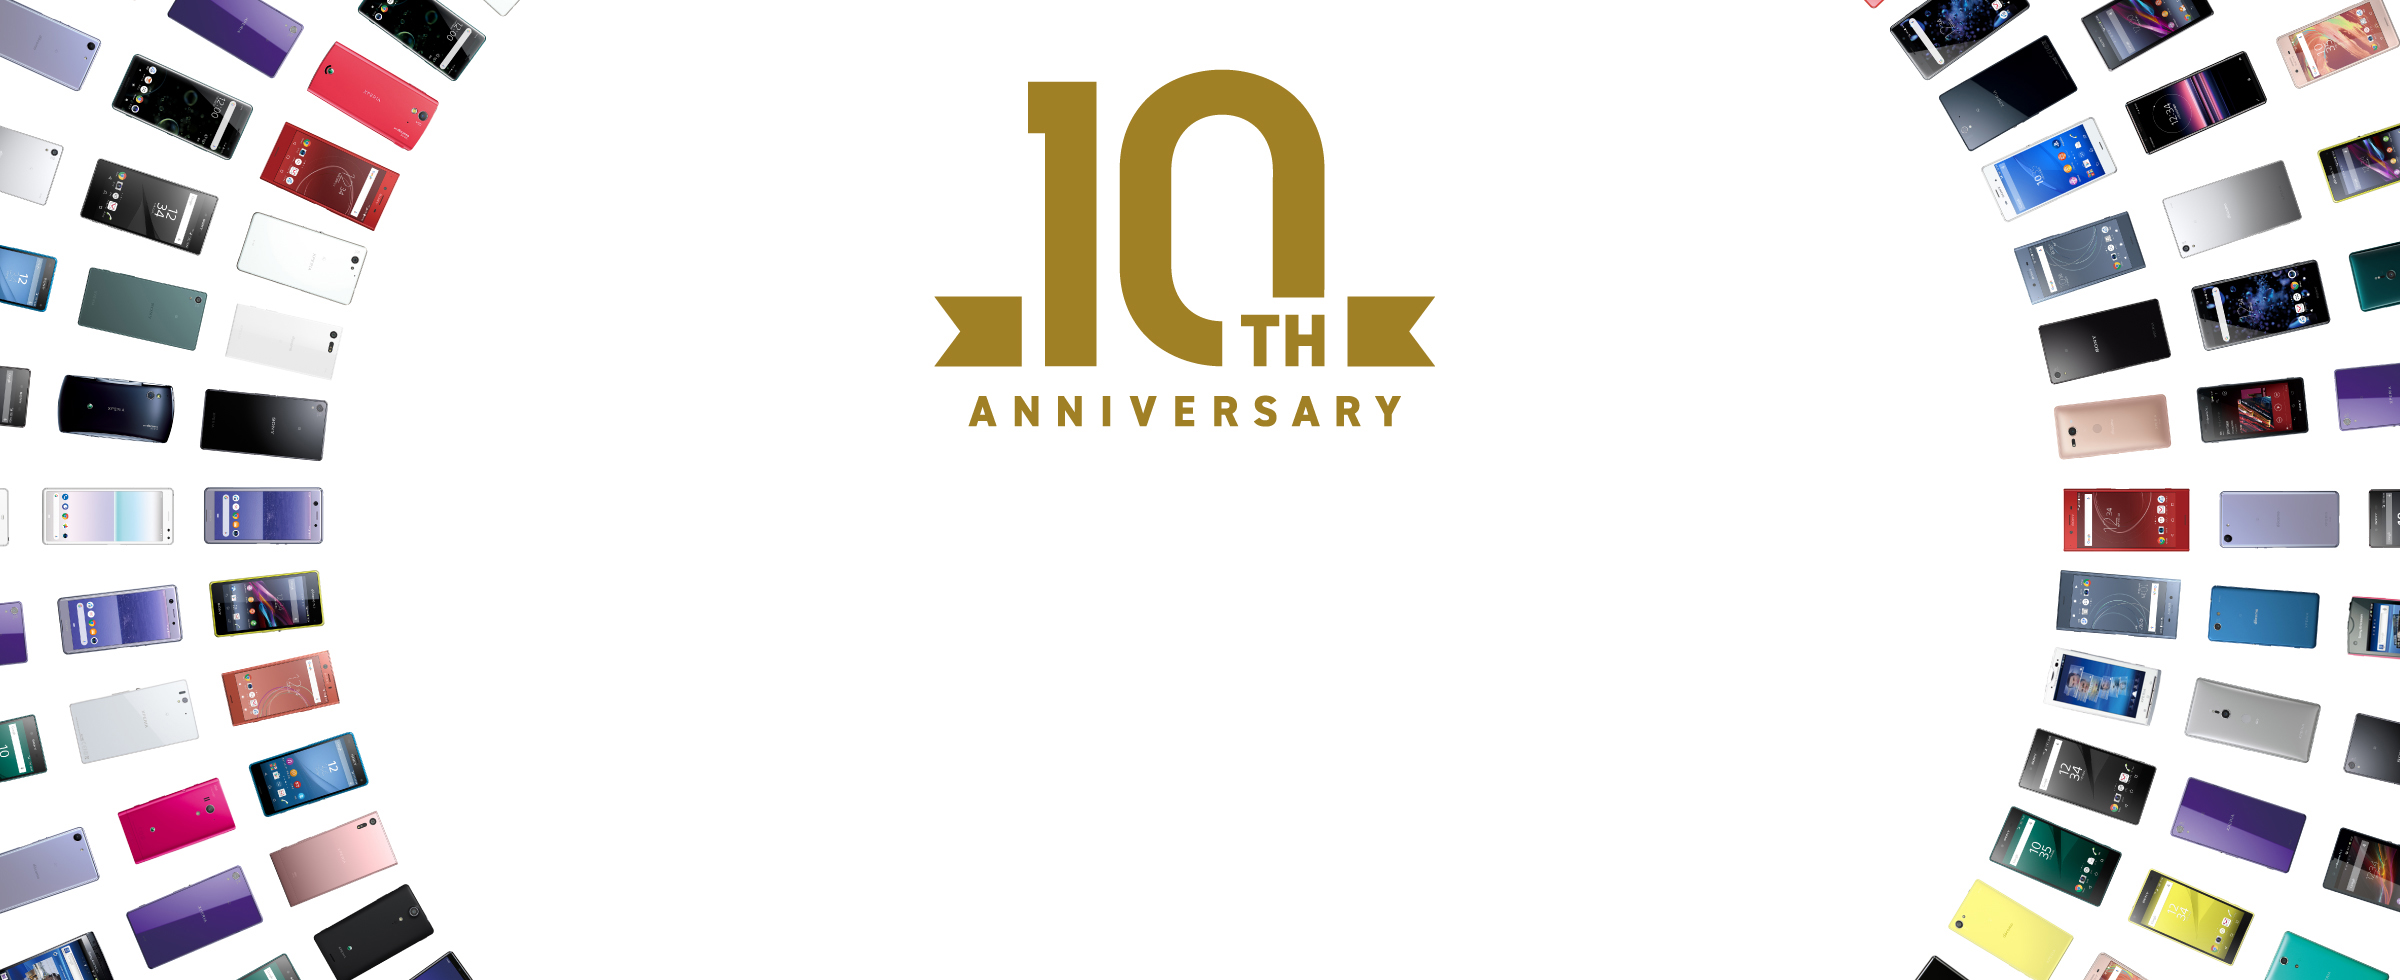 Xperia 10TH ANNIVERSARY 10年分のありがとう、そしてこれからも。